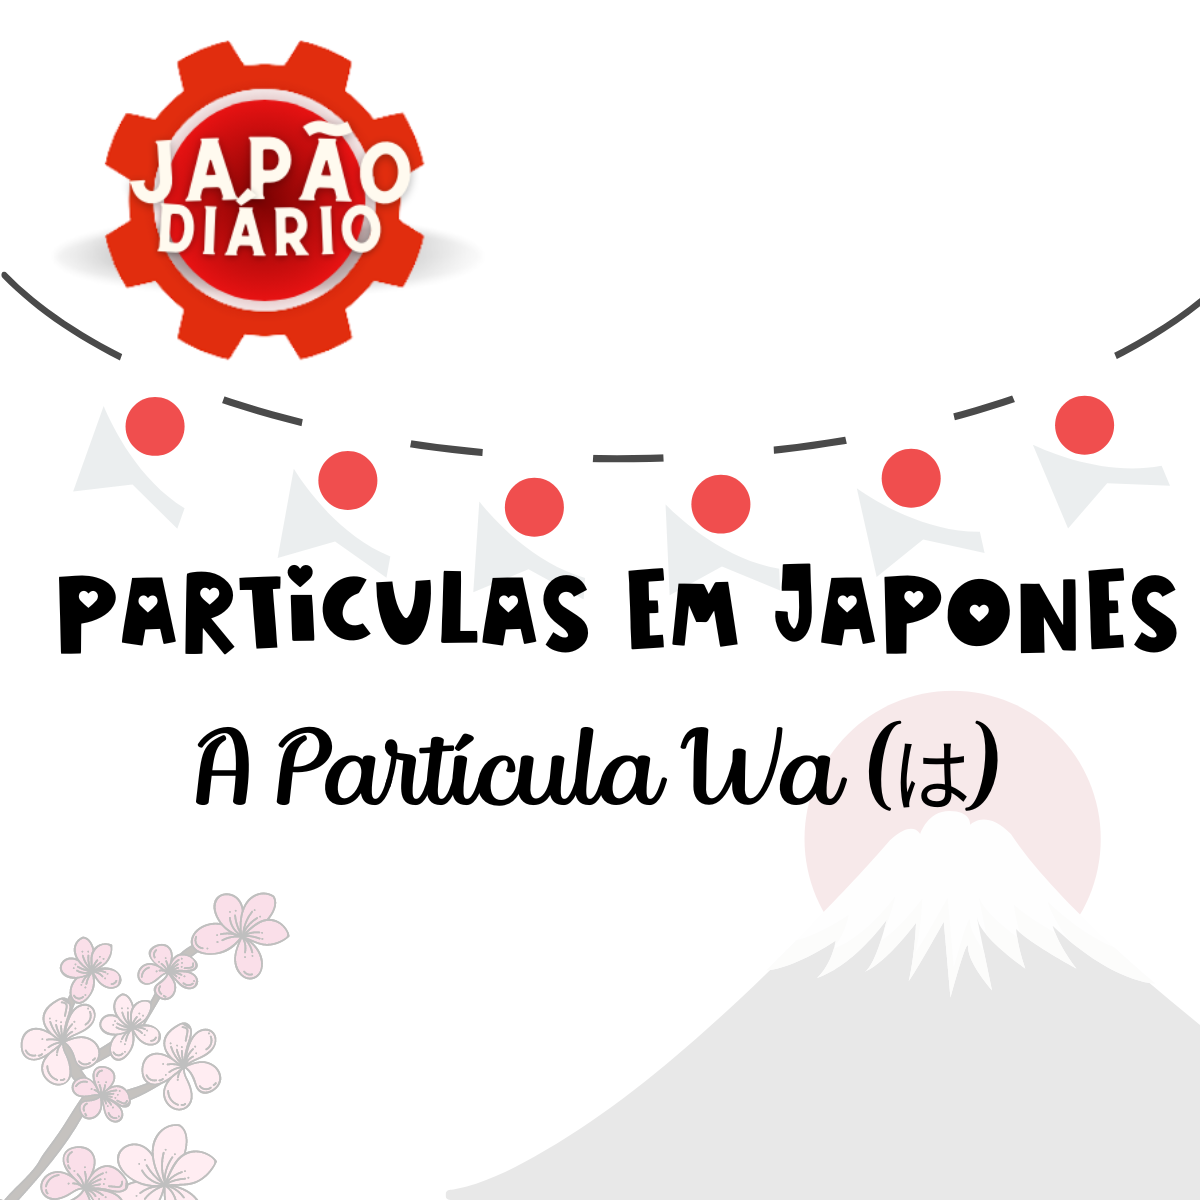 You are currently viewing A Partícula Wa (は) em Japonês: Uso e Significado dessa Partícula Fundamental